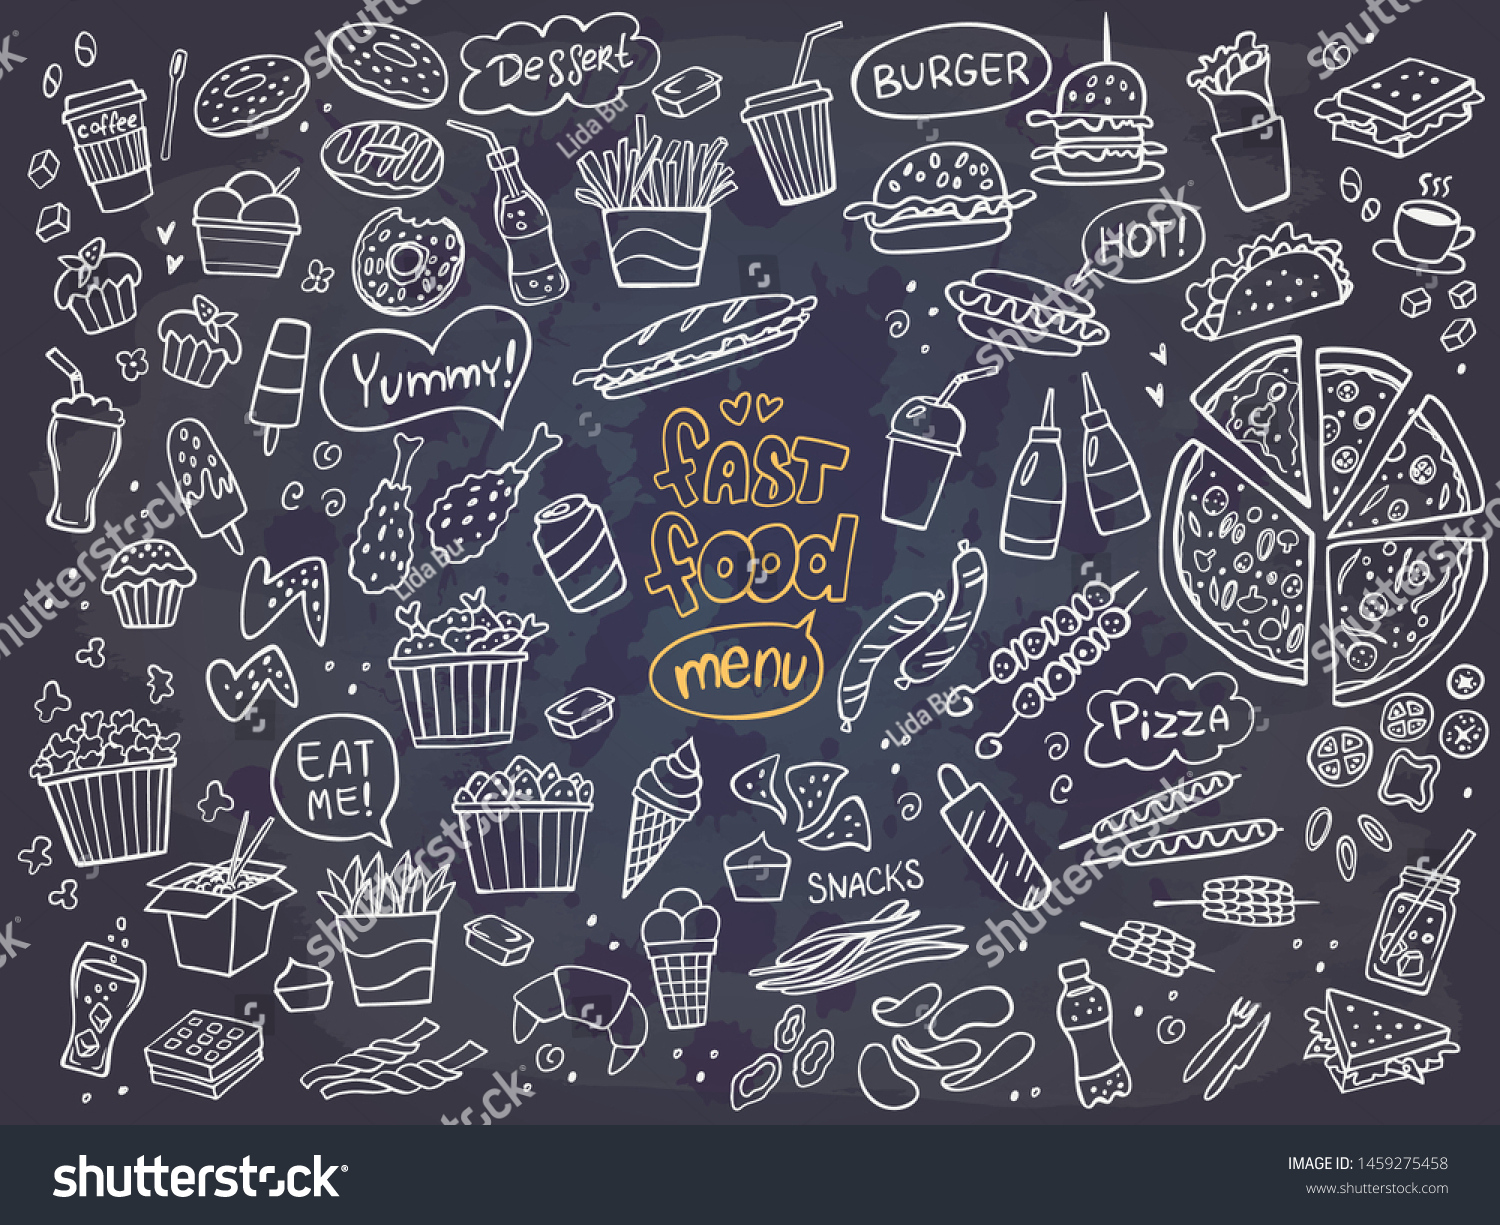 Set of fast food doodles on chalkboard. Vector illustration. Perfect for menu or food package design. #1459275458